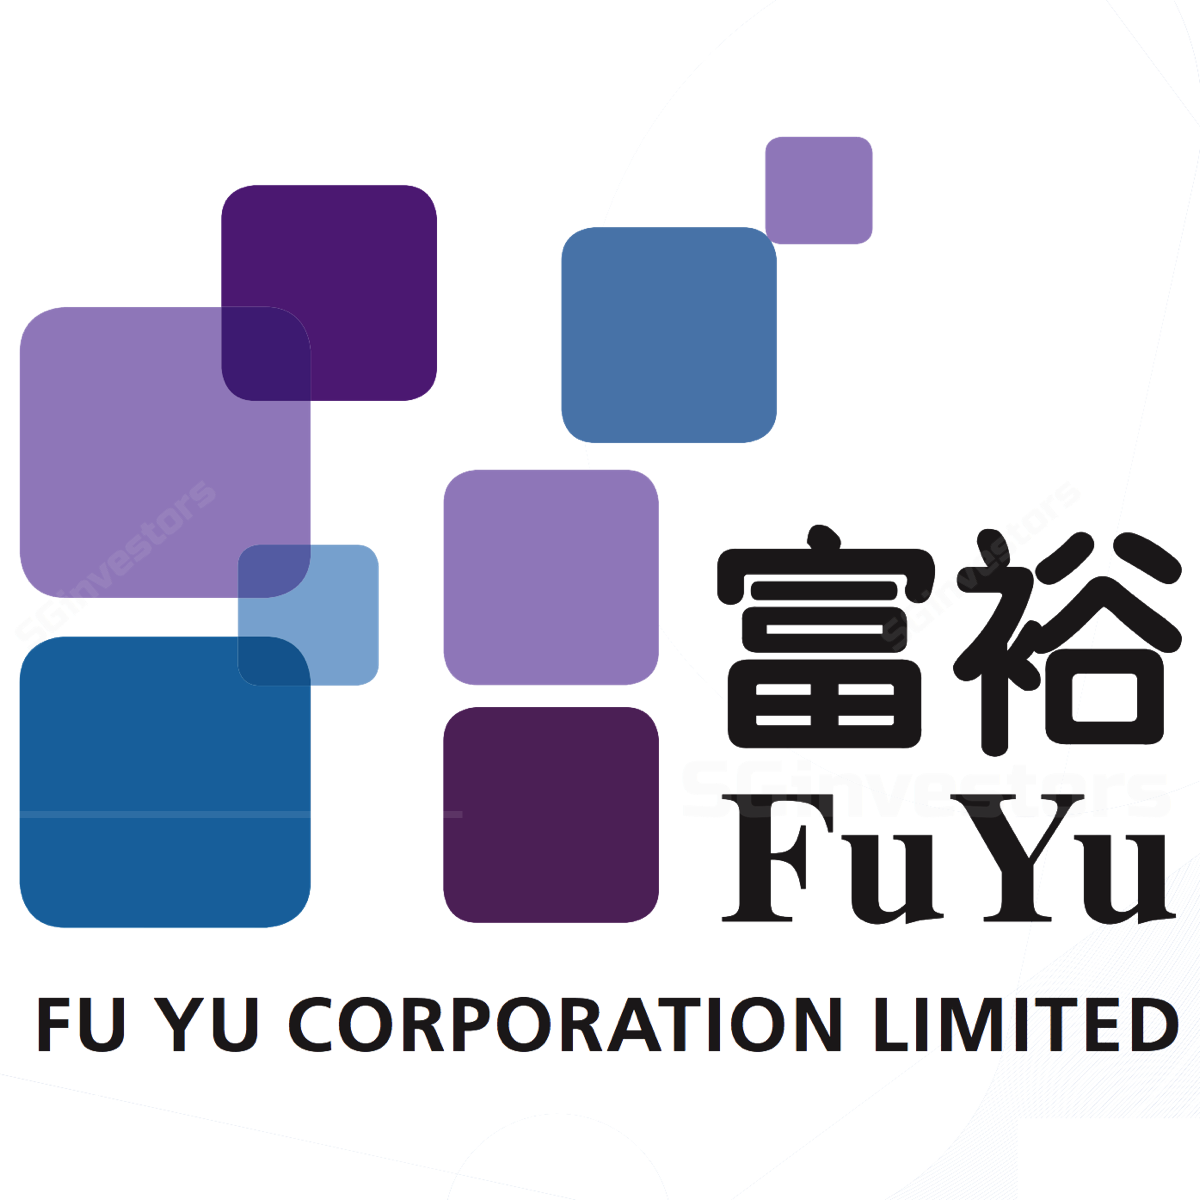 FU YU CORPORATION LTD (SGX:F13) | SGinvestors.io